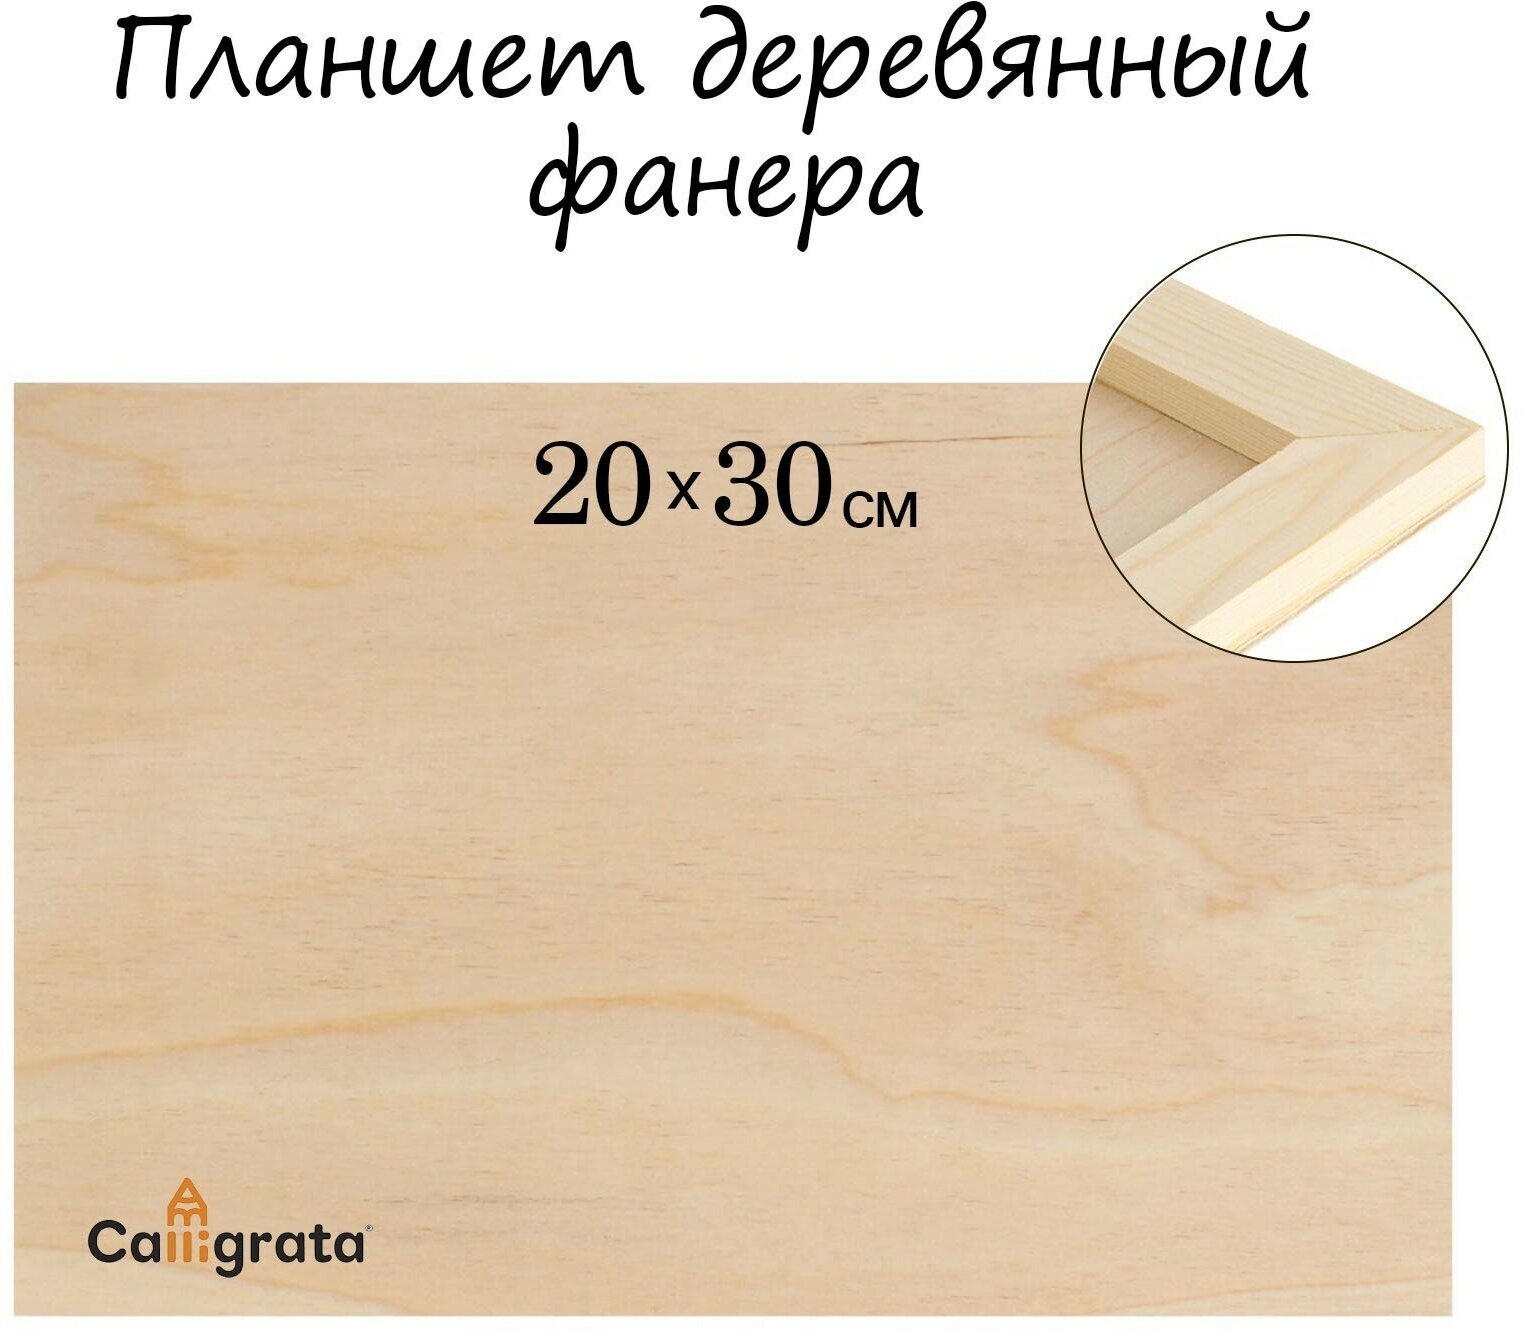 Планшет деревянный 20 х 30 х 2 см, фанера (1шт.)